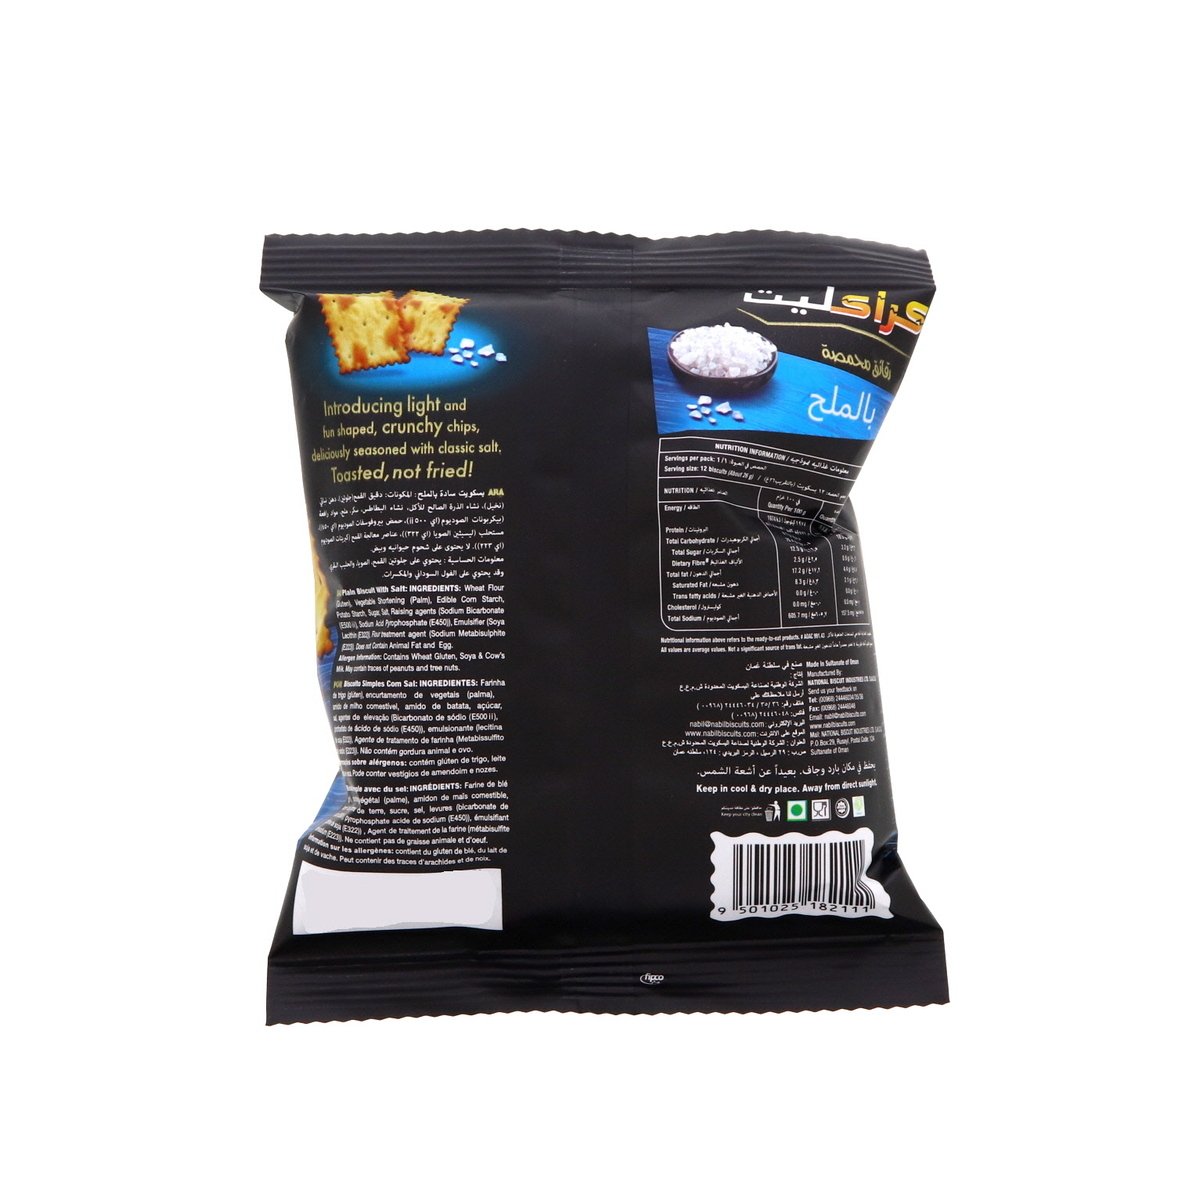 Kracklite Toasted Chips Salted 12 x 26 g